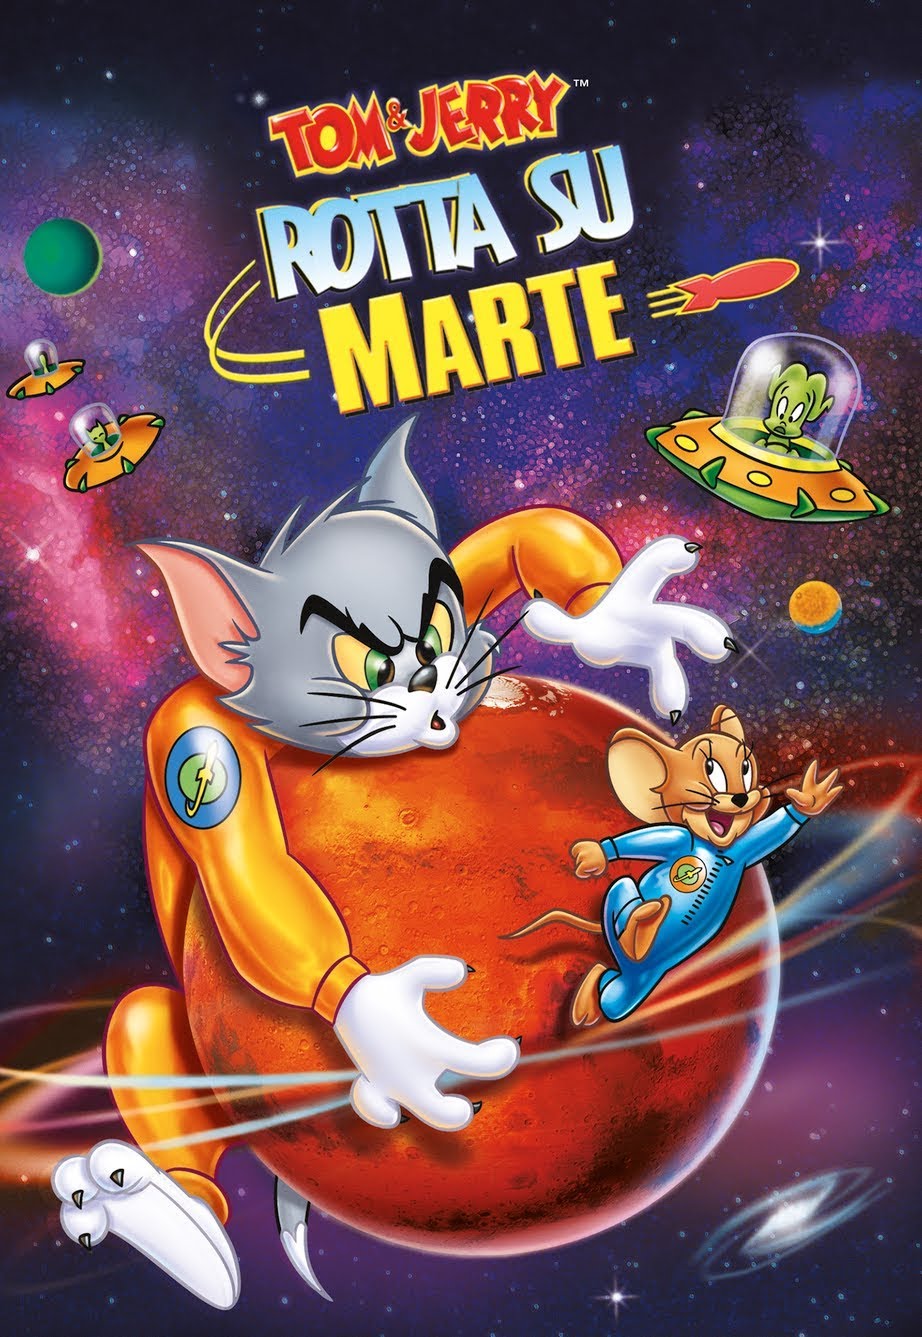 Tom & Jerry: Rotta su Marte (2005)